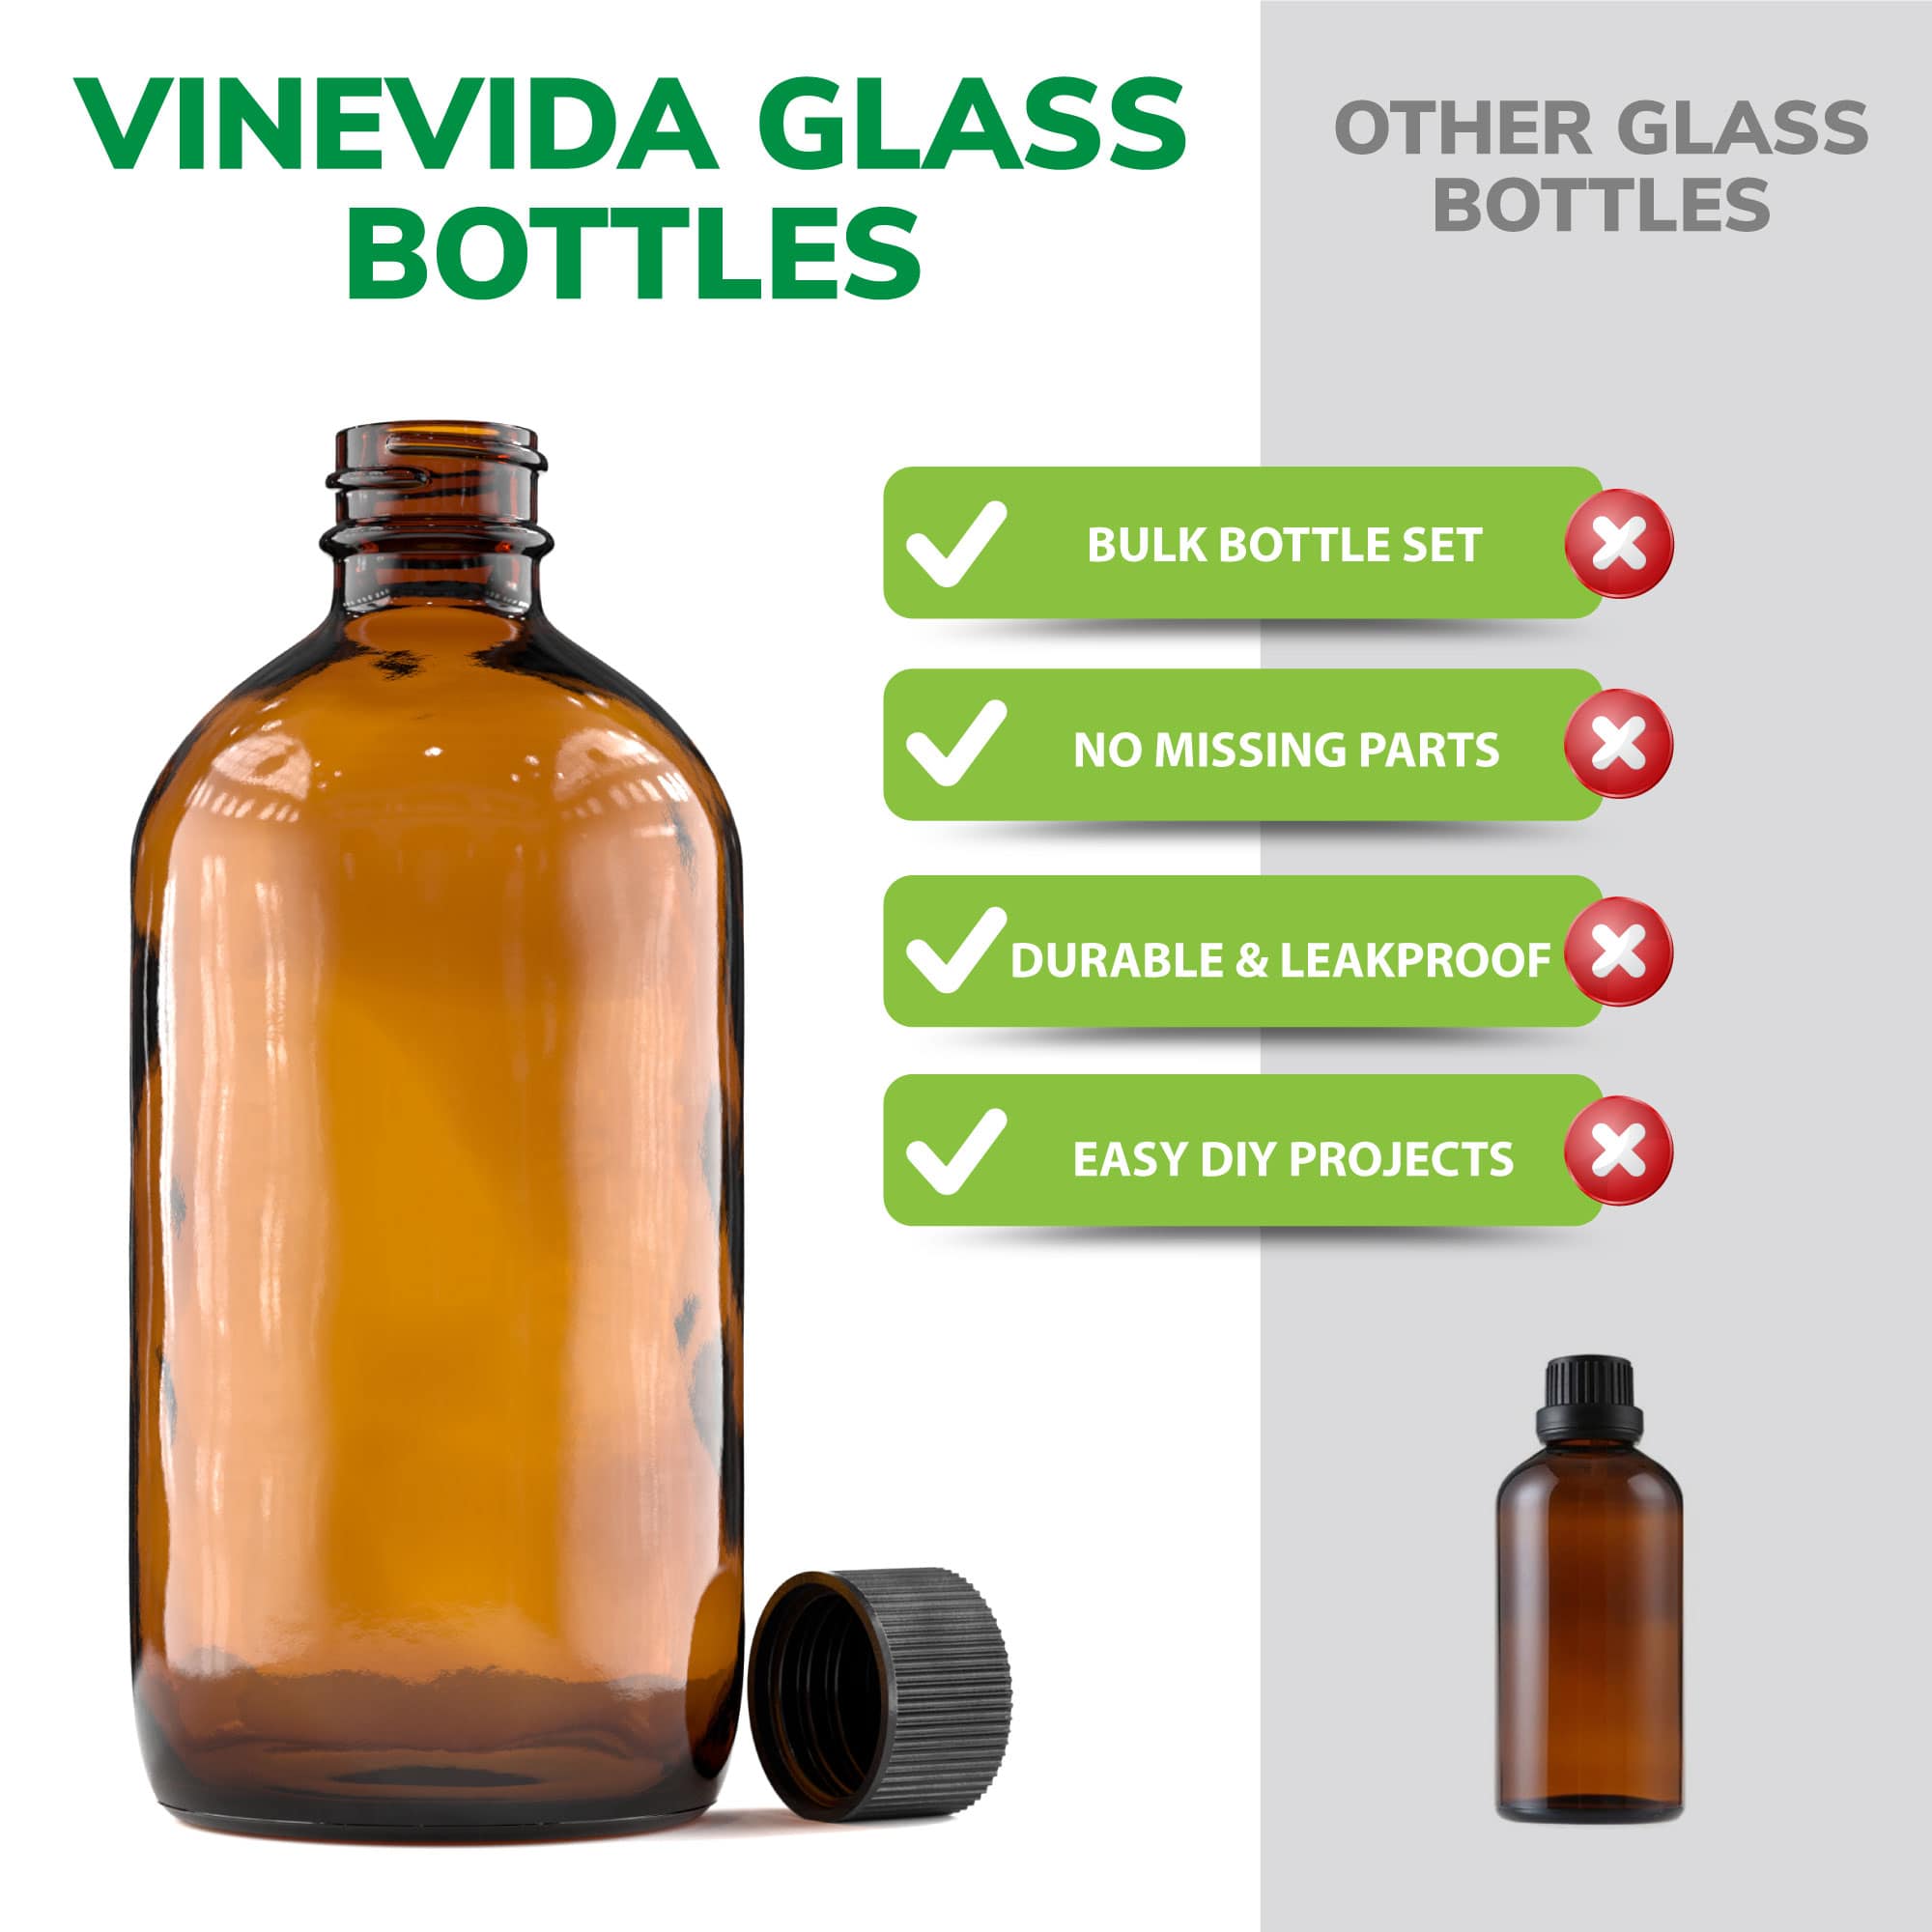 8 oz amber glass bottles